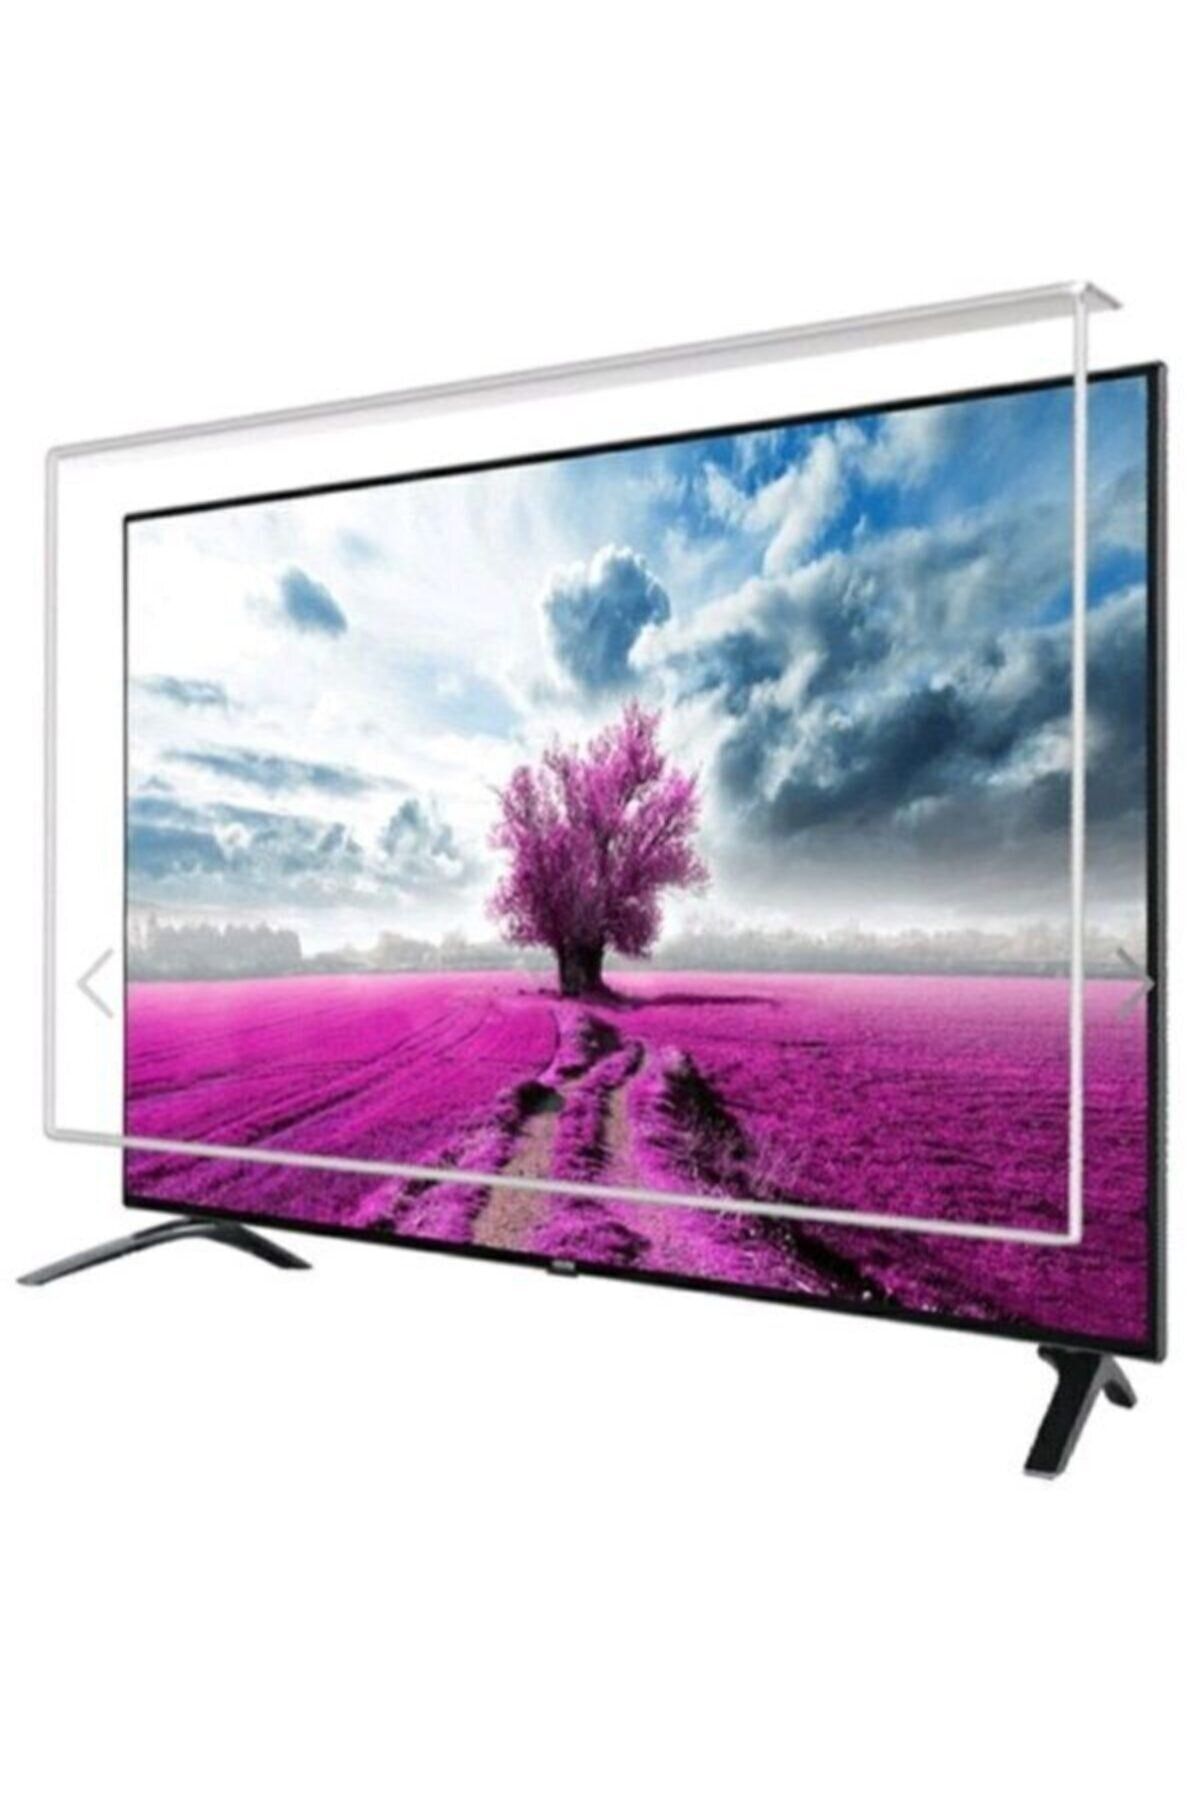 Arçelik A55 A 850 B 55 139 Ekran Uydu Alıcılı 4k Ultra Hd Smart Led Tv Ekran Koruyucu